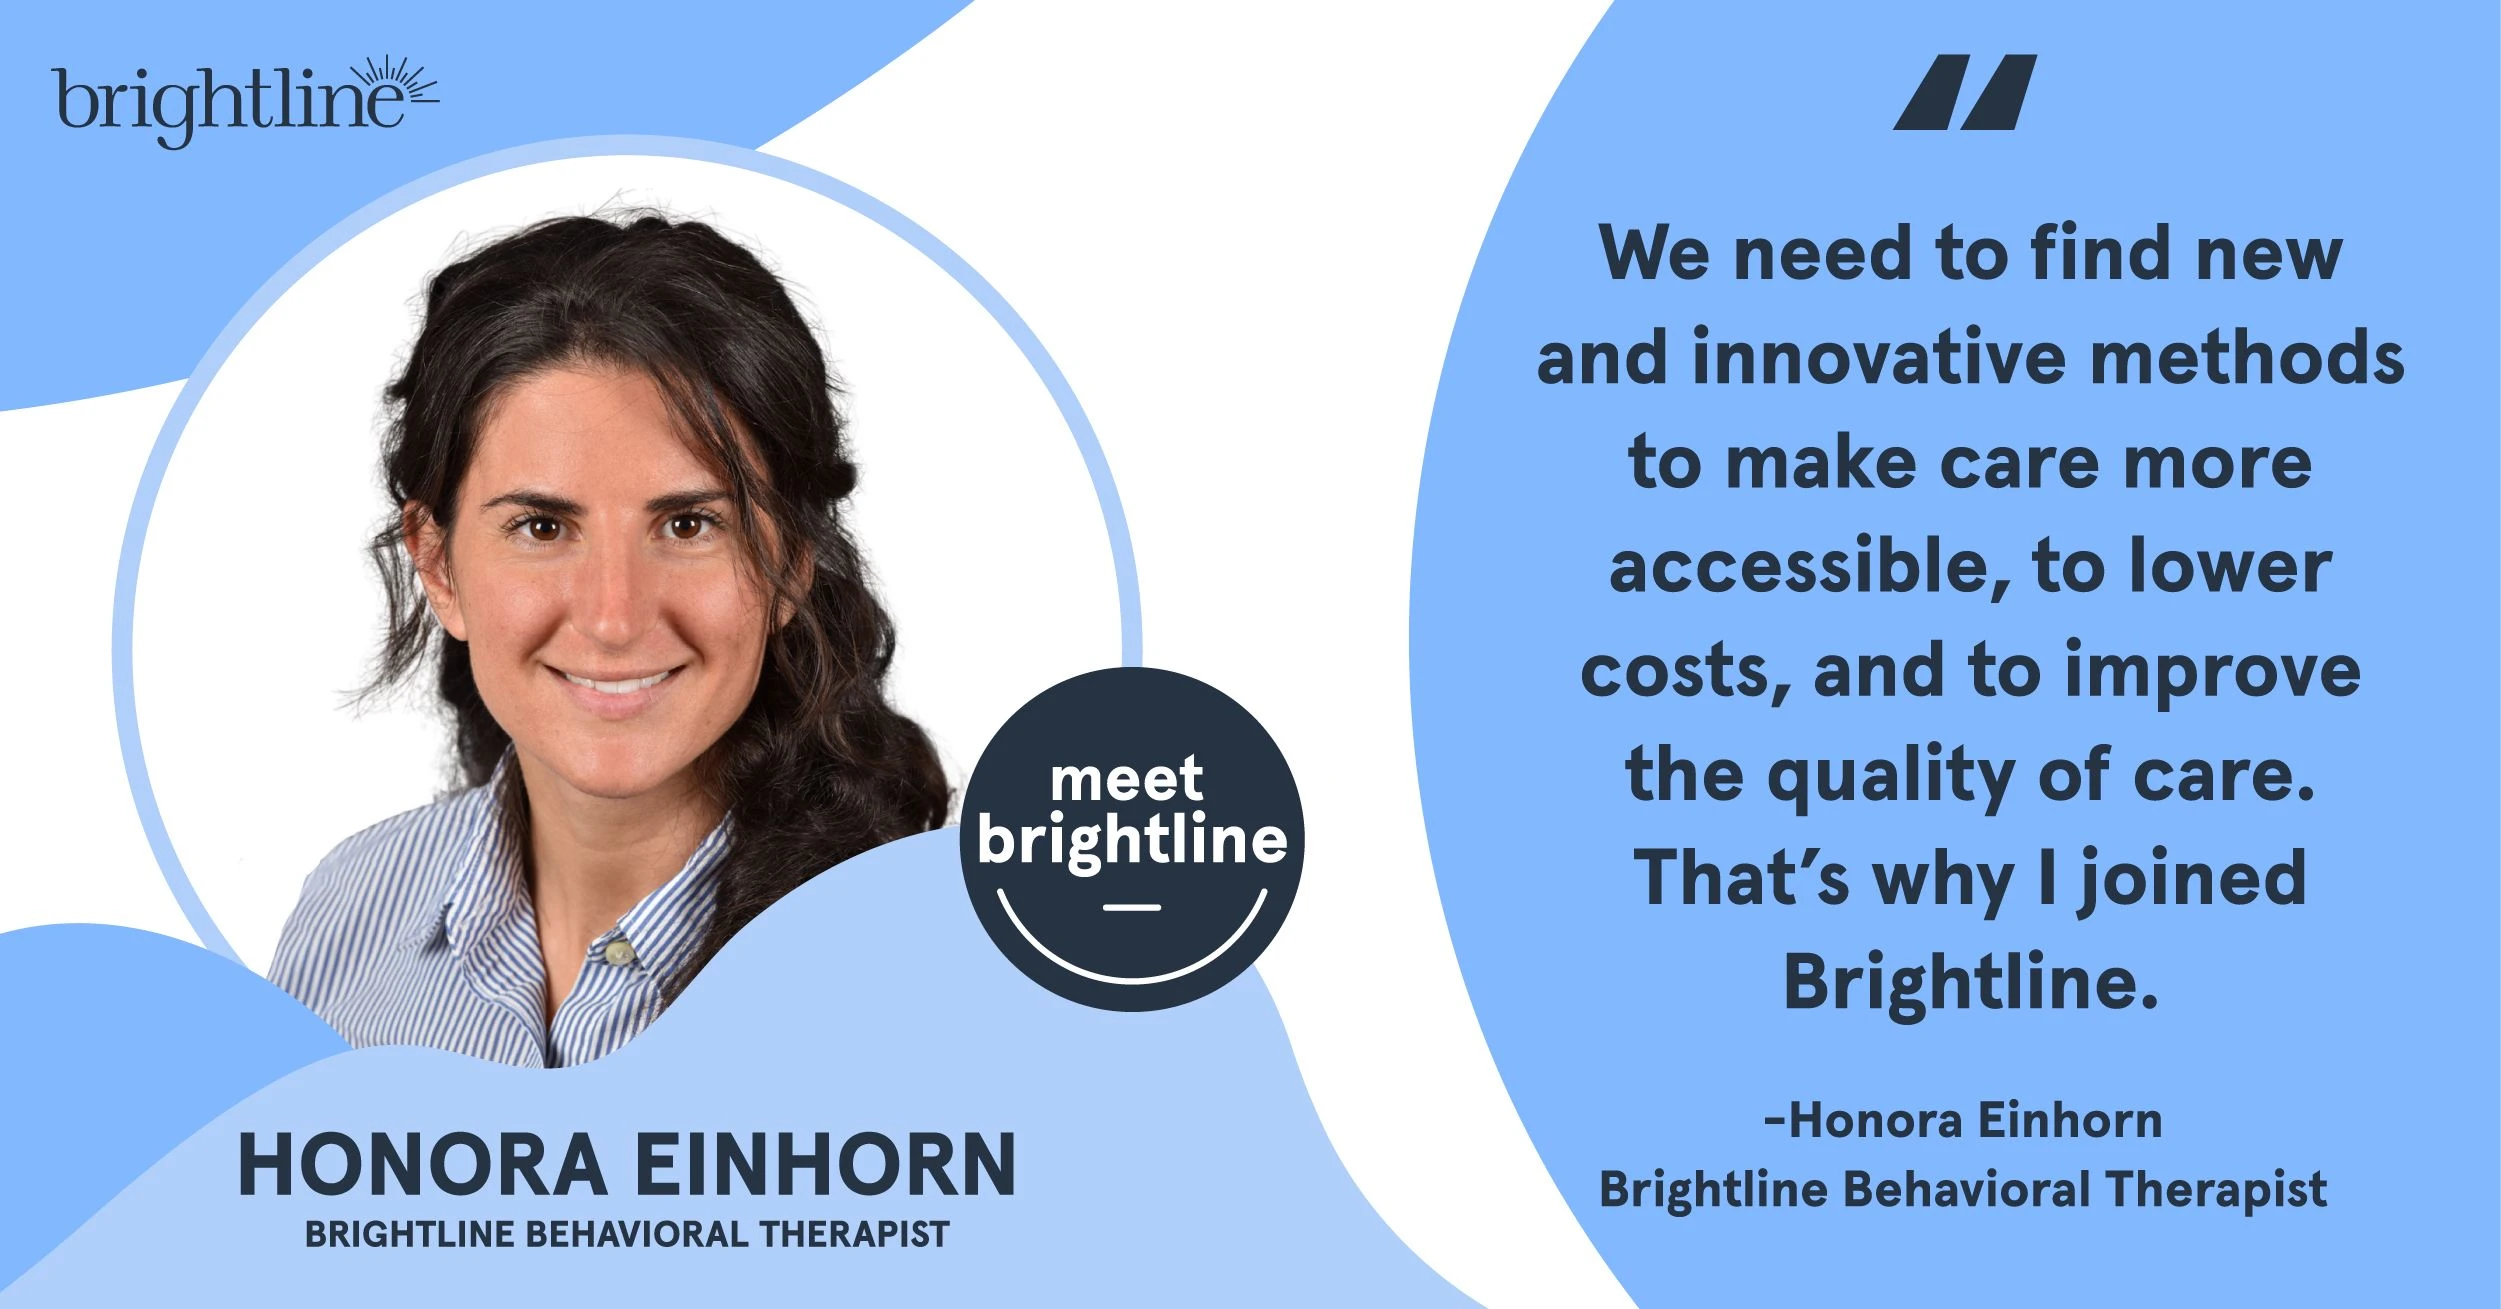 Honora Einhorn Brightline behavioral therapist